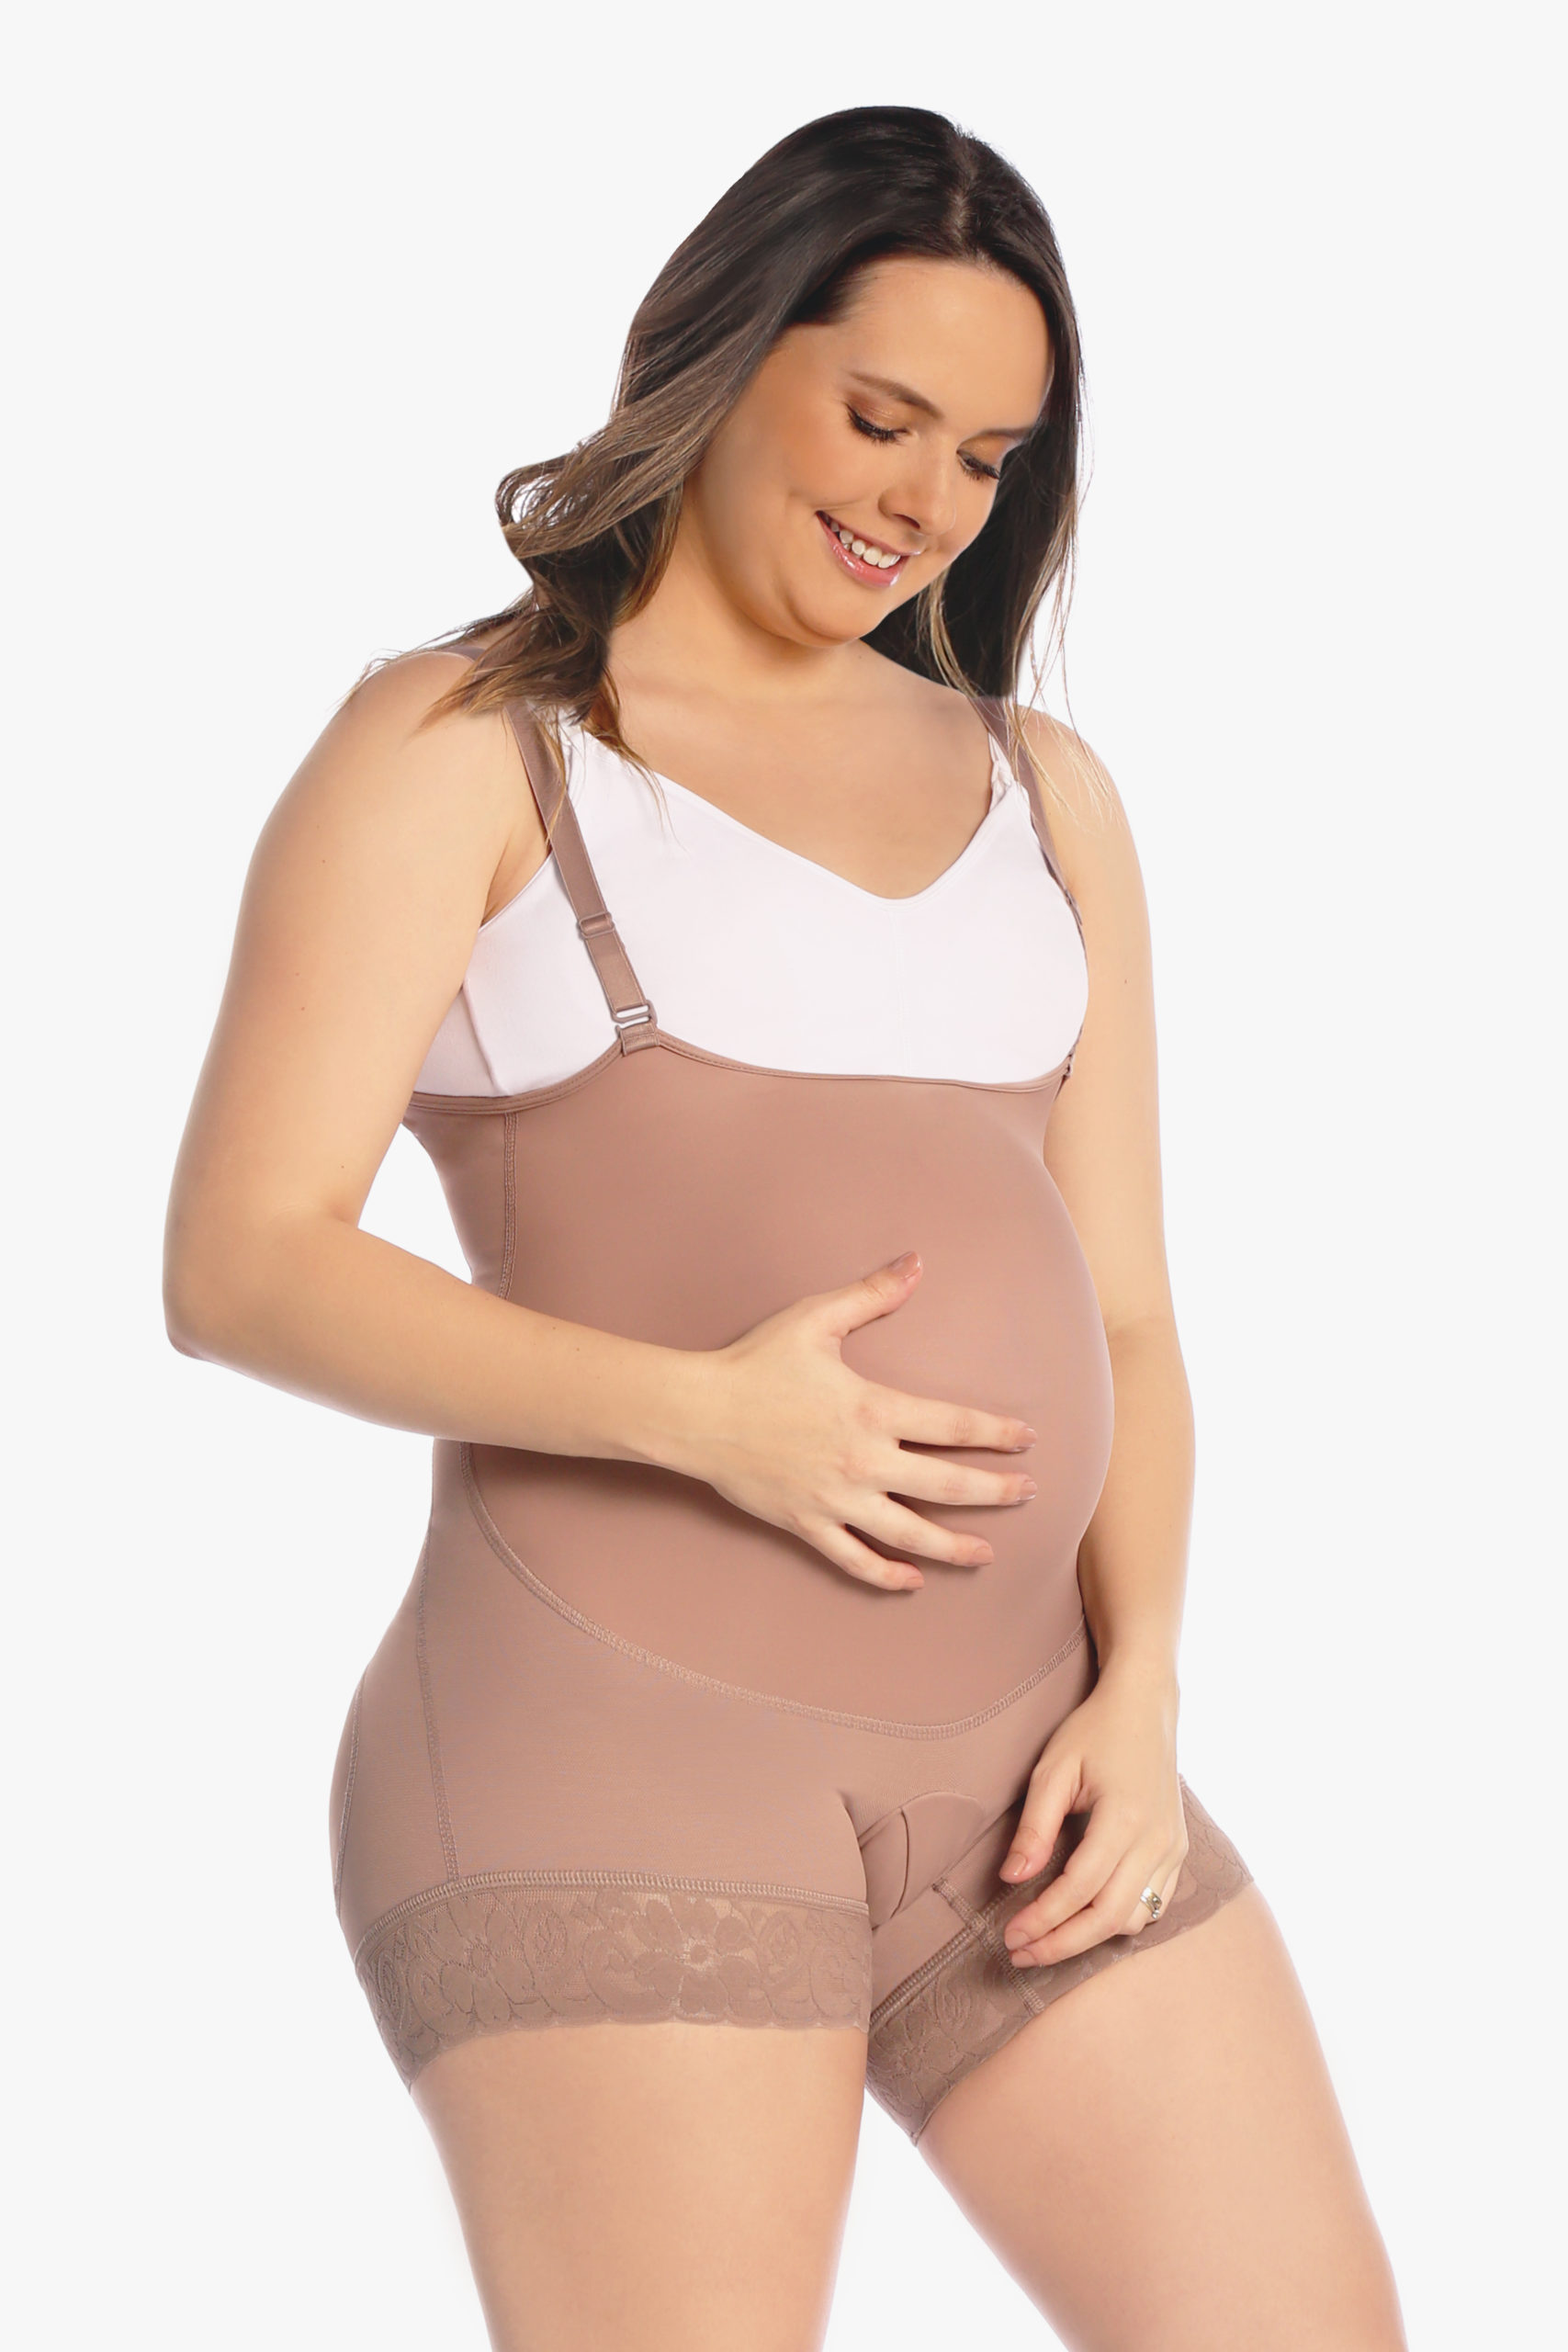 Fajas MariaE - Te acompañamos en tu proceso de maternidad, brindándote las  mejores opciones para cuidar tu cuerpo durante y después de tu embarazo.  Fajas Maternas y postparto MariaE.